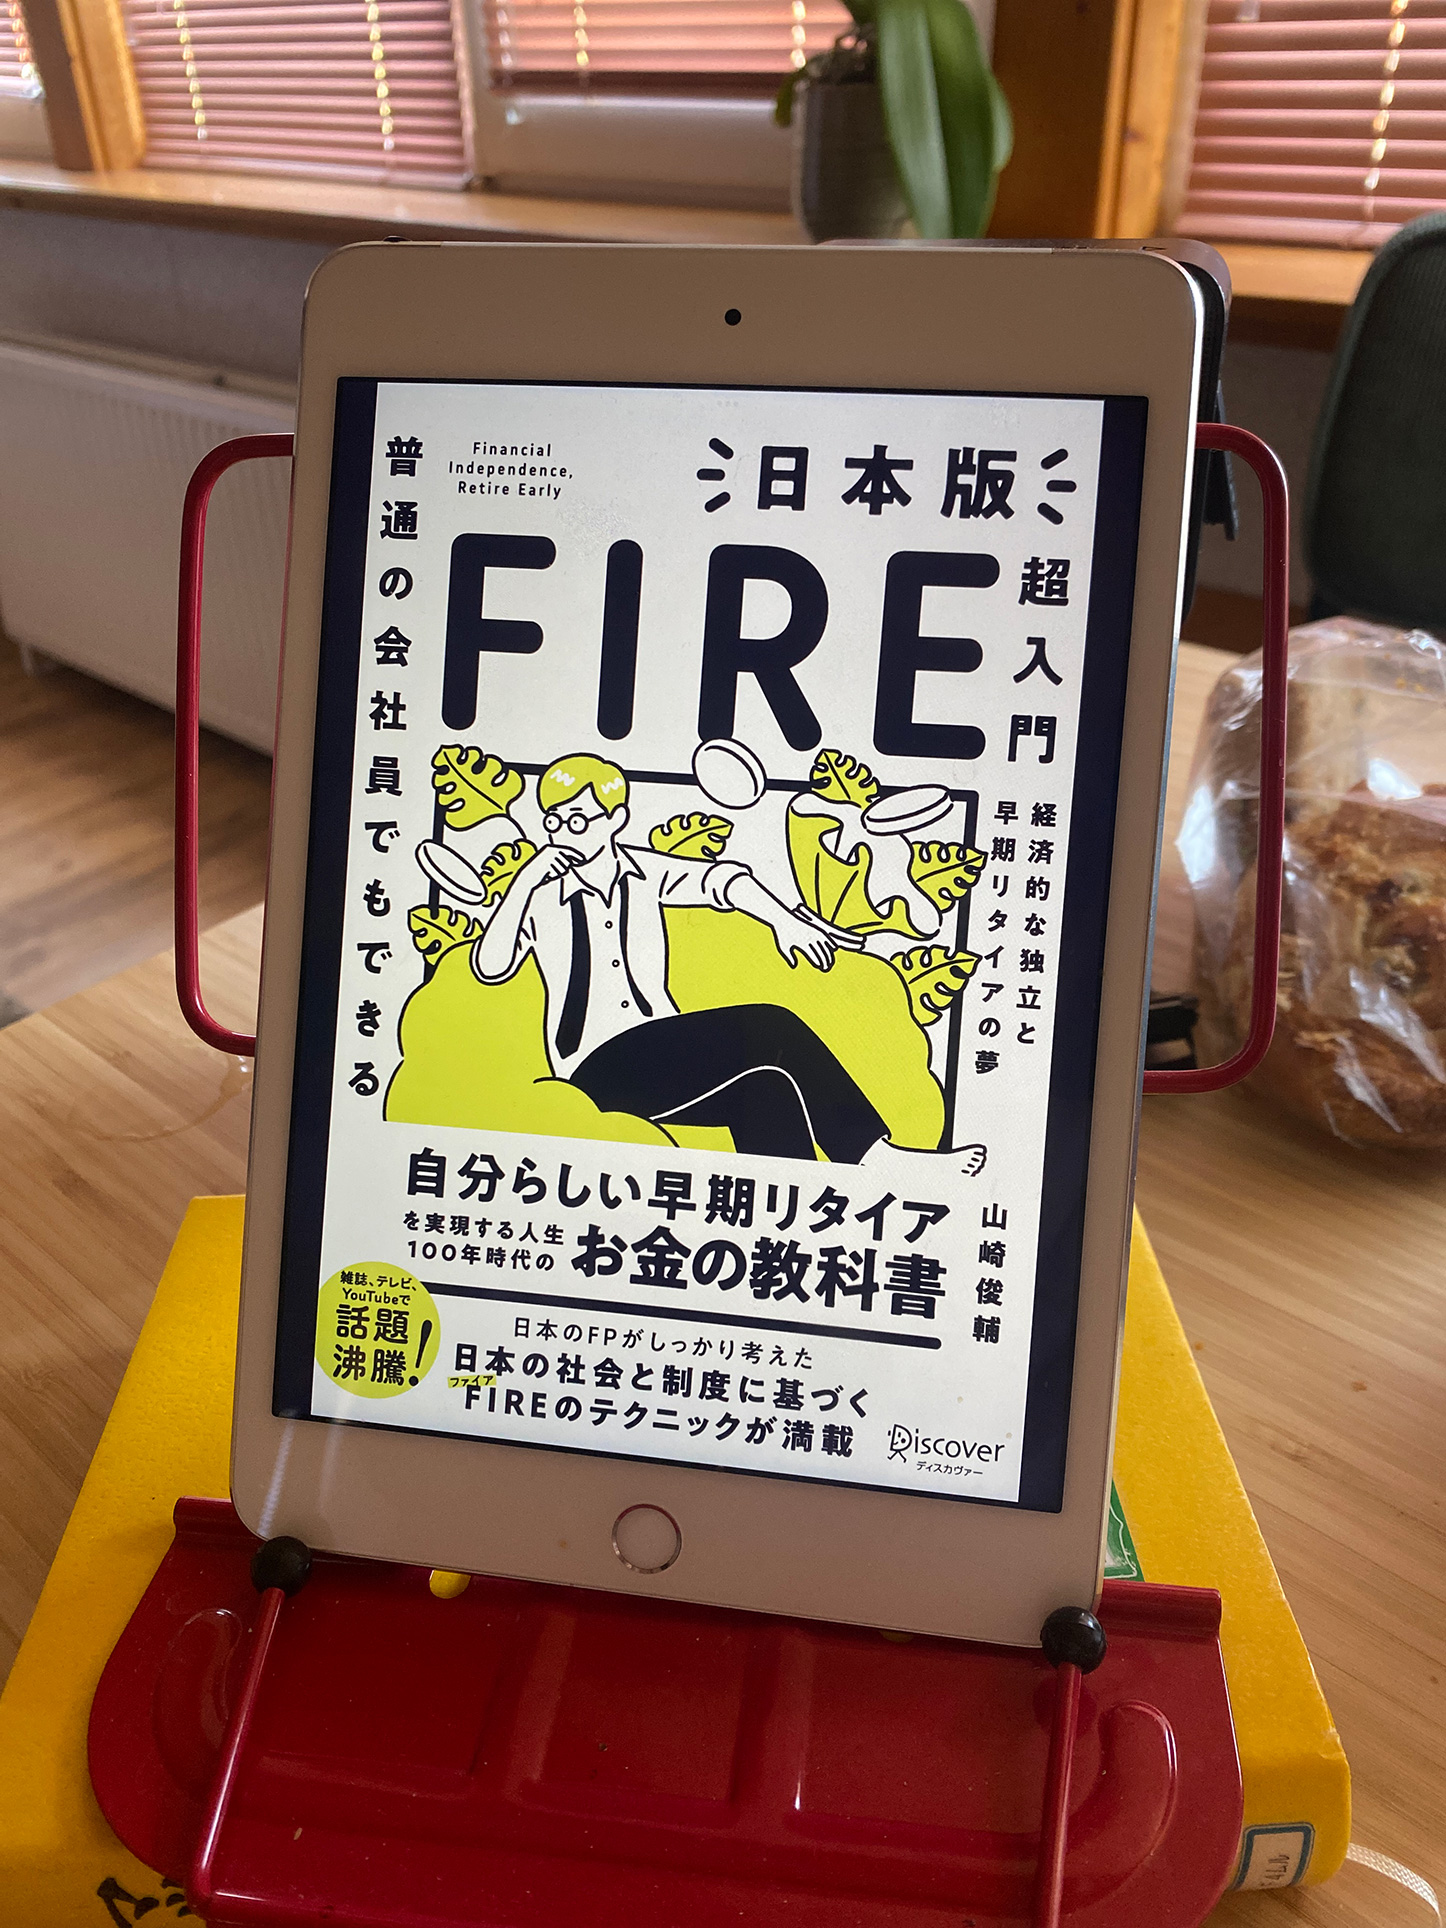 書籍普通の会社員でもできる 日本版FIRE超入門(山崎俊輔/ディスカヴァー・トゥエンティワン)」の表紙画像